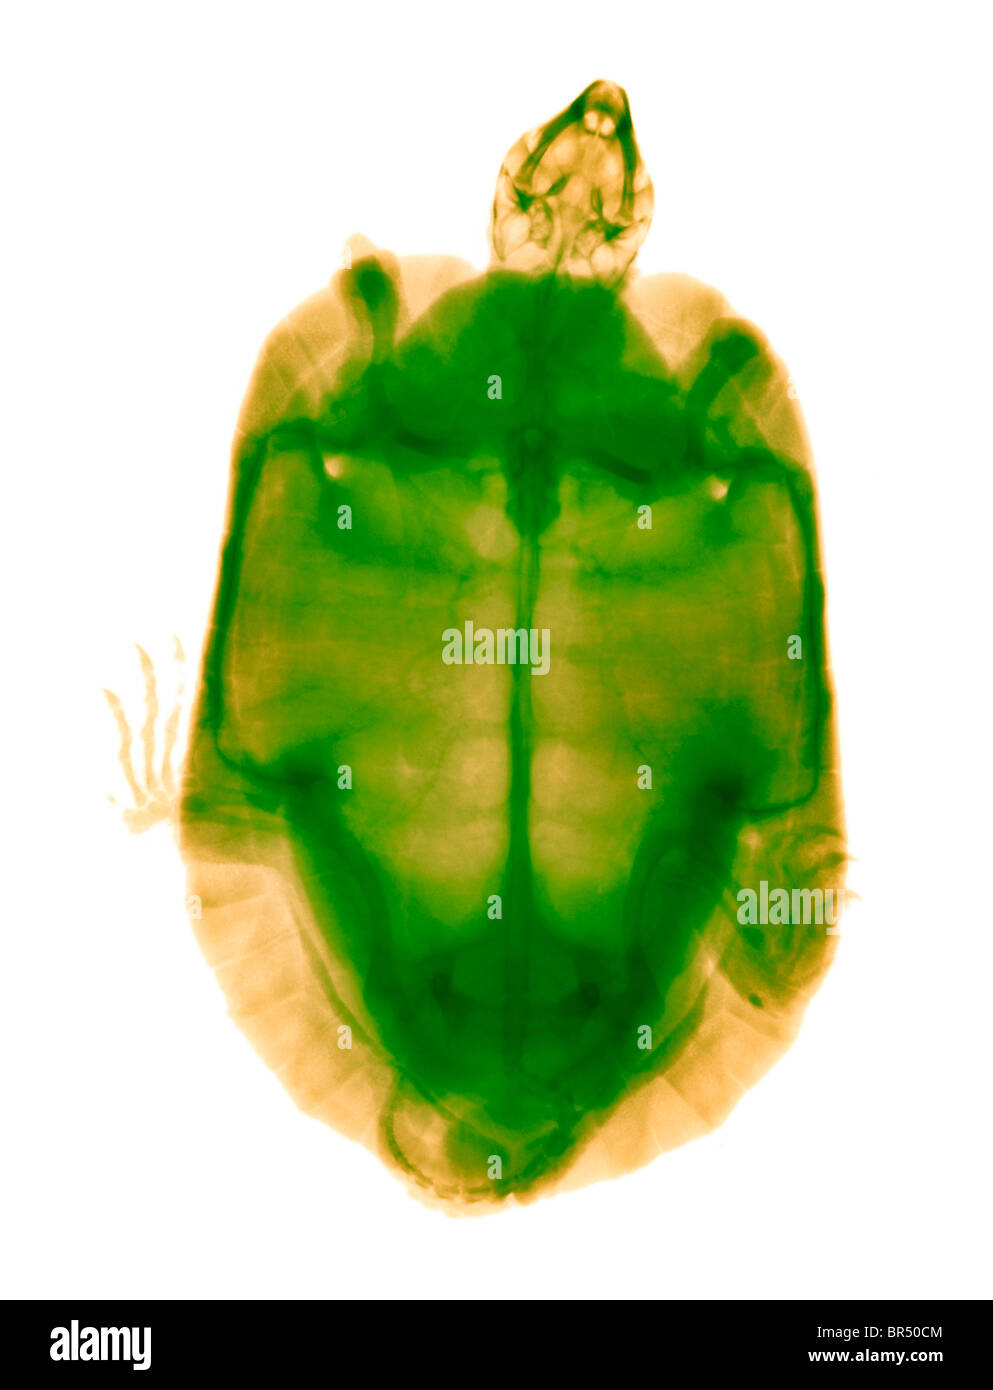 Radiografía de una tortuga de madera encuentra perdido ambas patas delanteras, que probablemente fueron cortadas por una persona Foto de stock